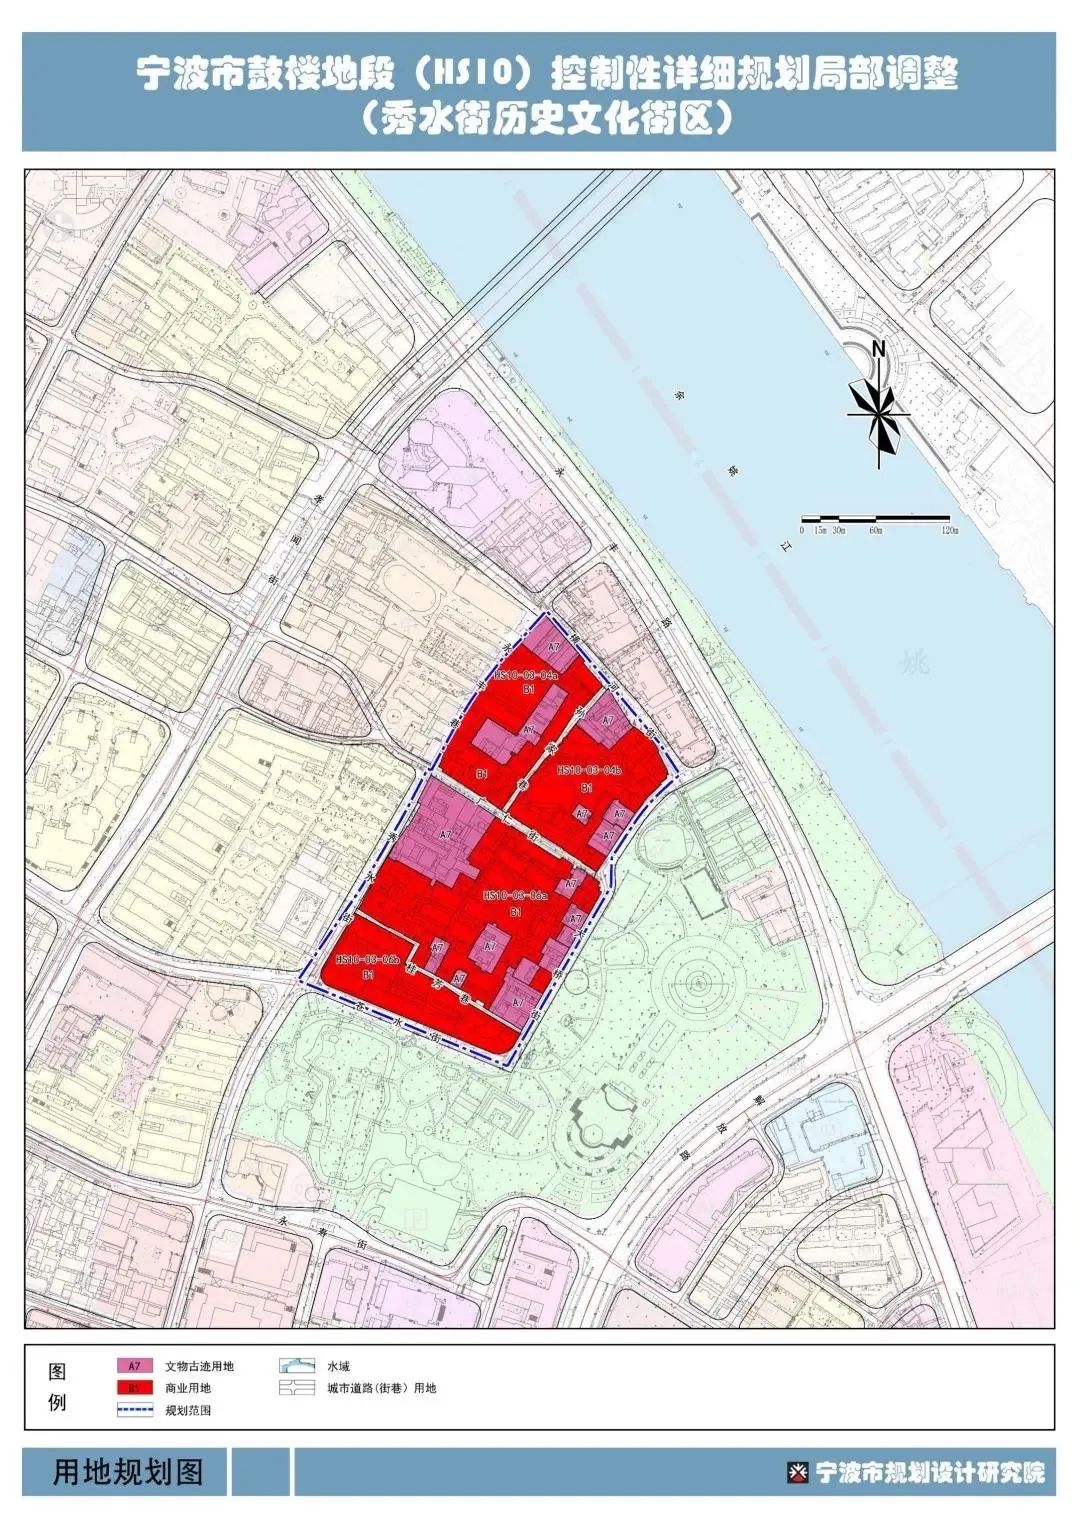 该规划中的红色区域为商业用地。